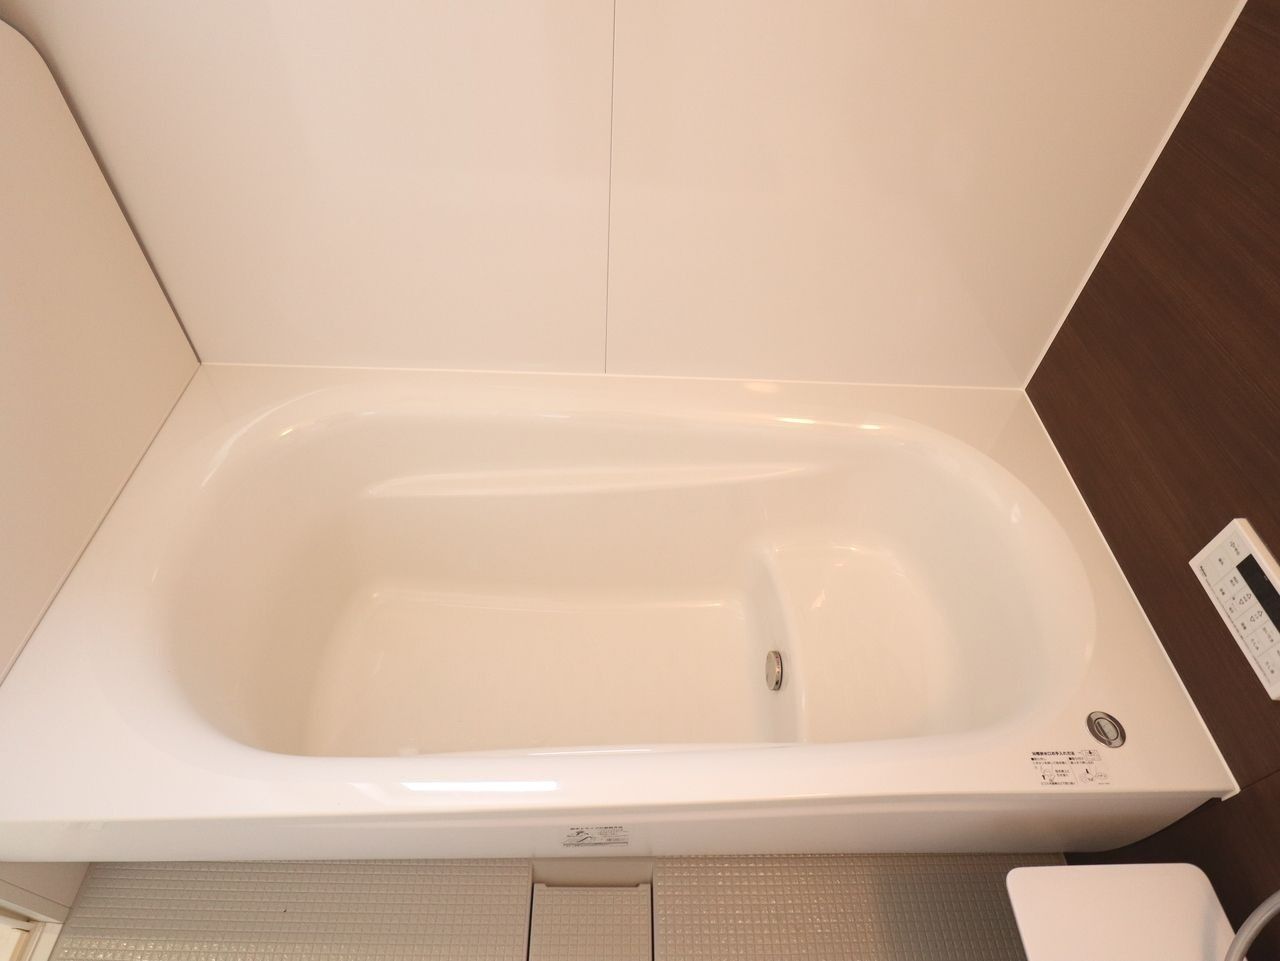 ベンチ浴槽と、そうでない浴槽を比べると、満水容量が35L節水できるそうです。水だけでなく、お湯を沸かす光熱費も一緒に節約できますので、一石二鳥です。